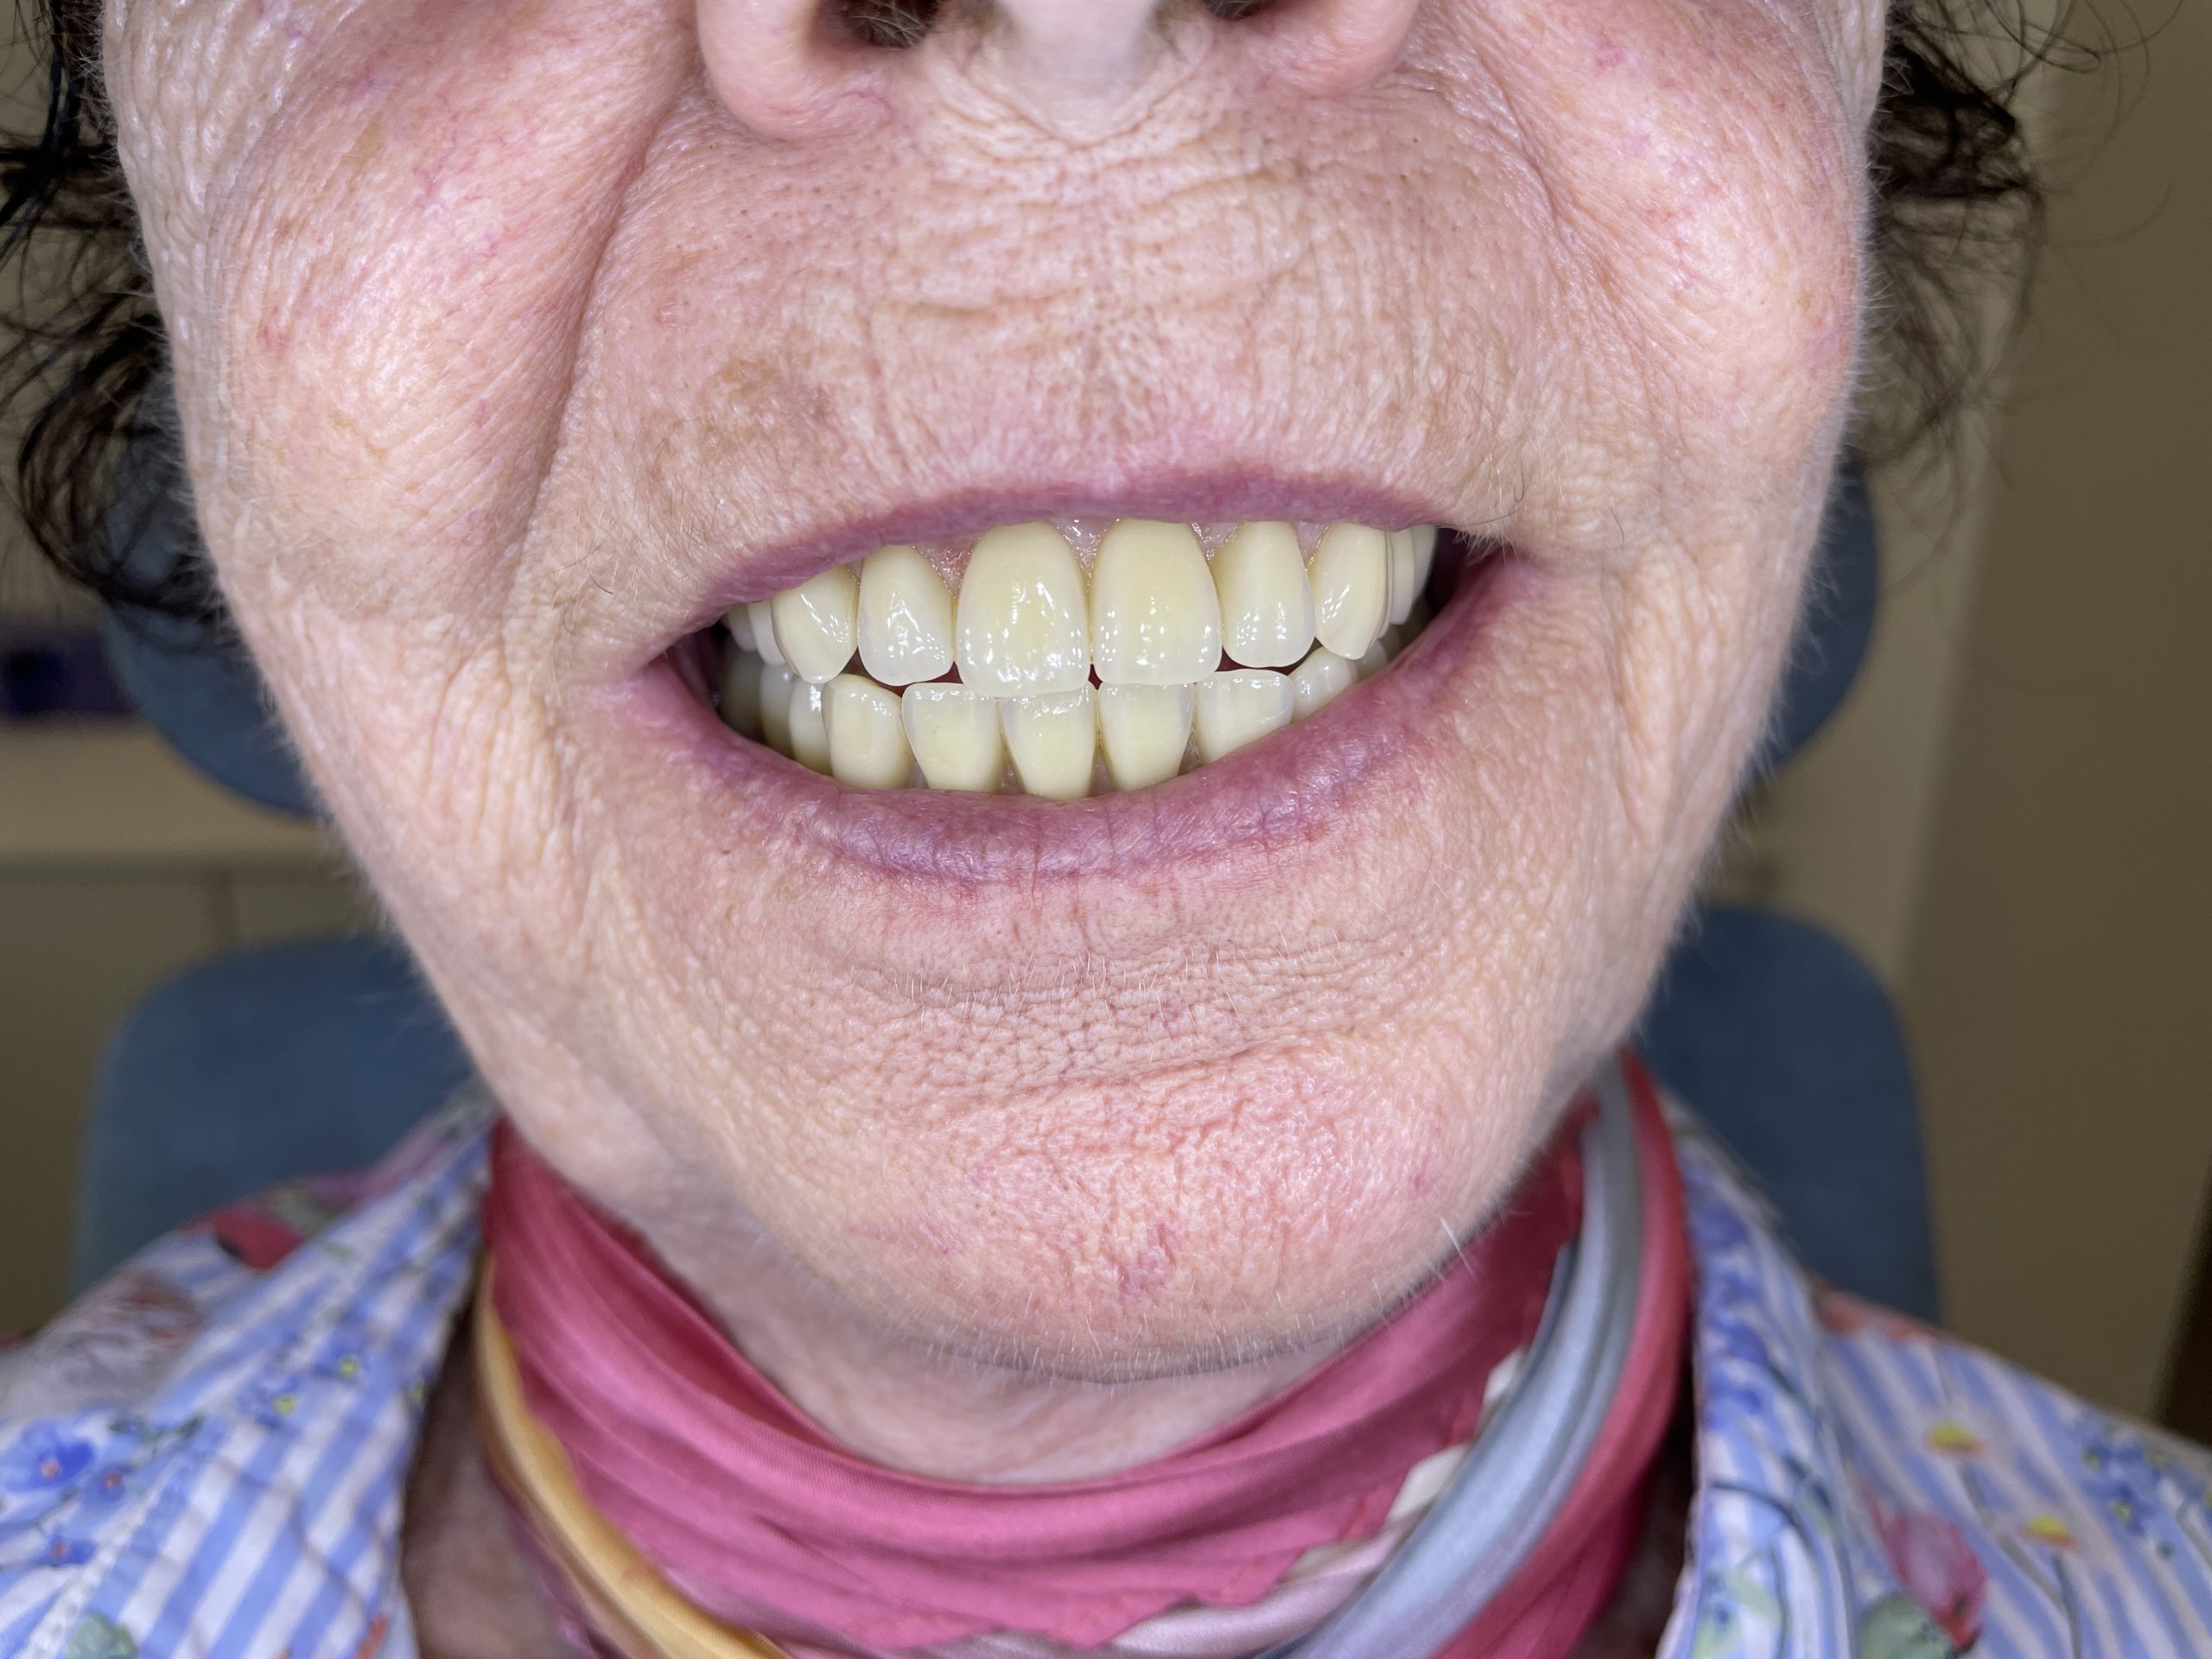 hybrid tandprotese på implantater foran åben mund smiler